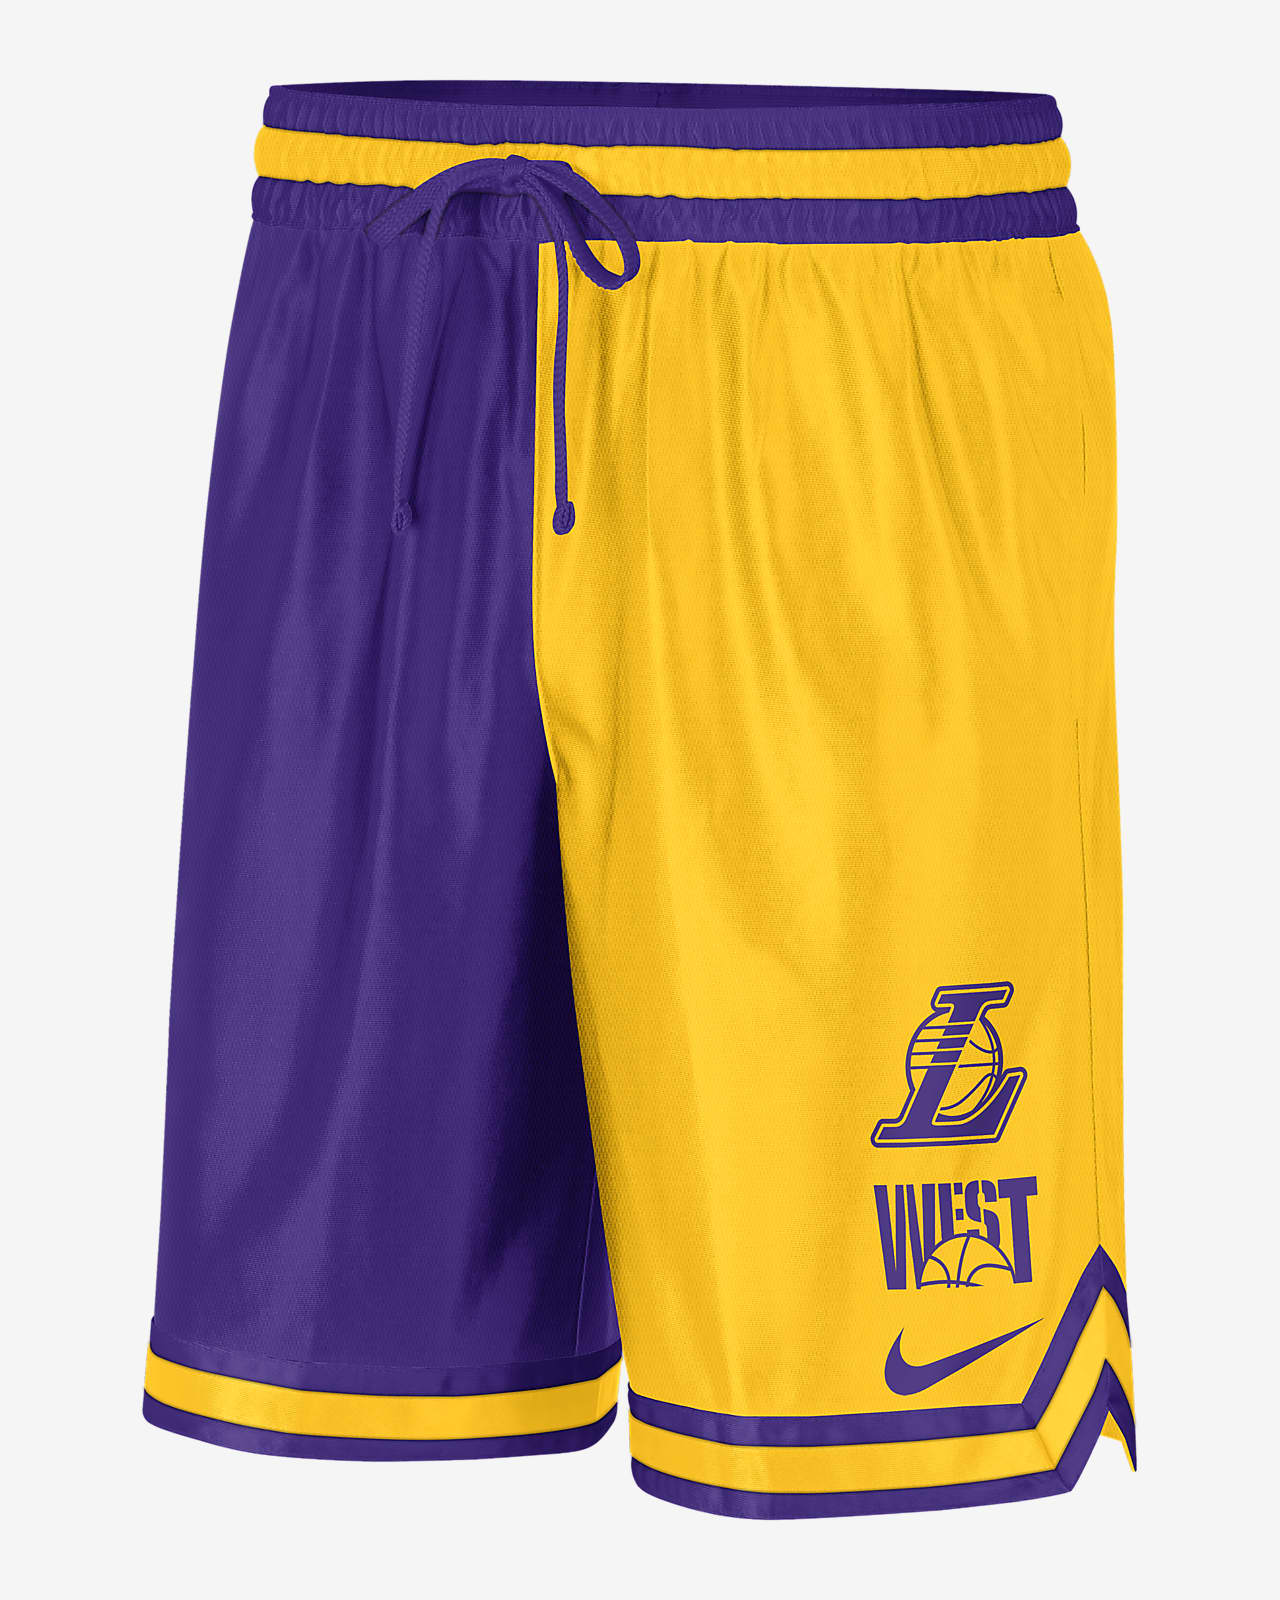 Shorts con gráfico de la NBA Nike Dri-FIT para hombre Los Angeles Lakers Courtside